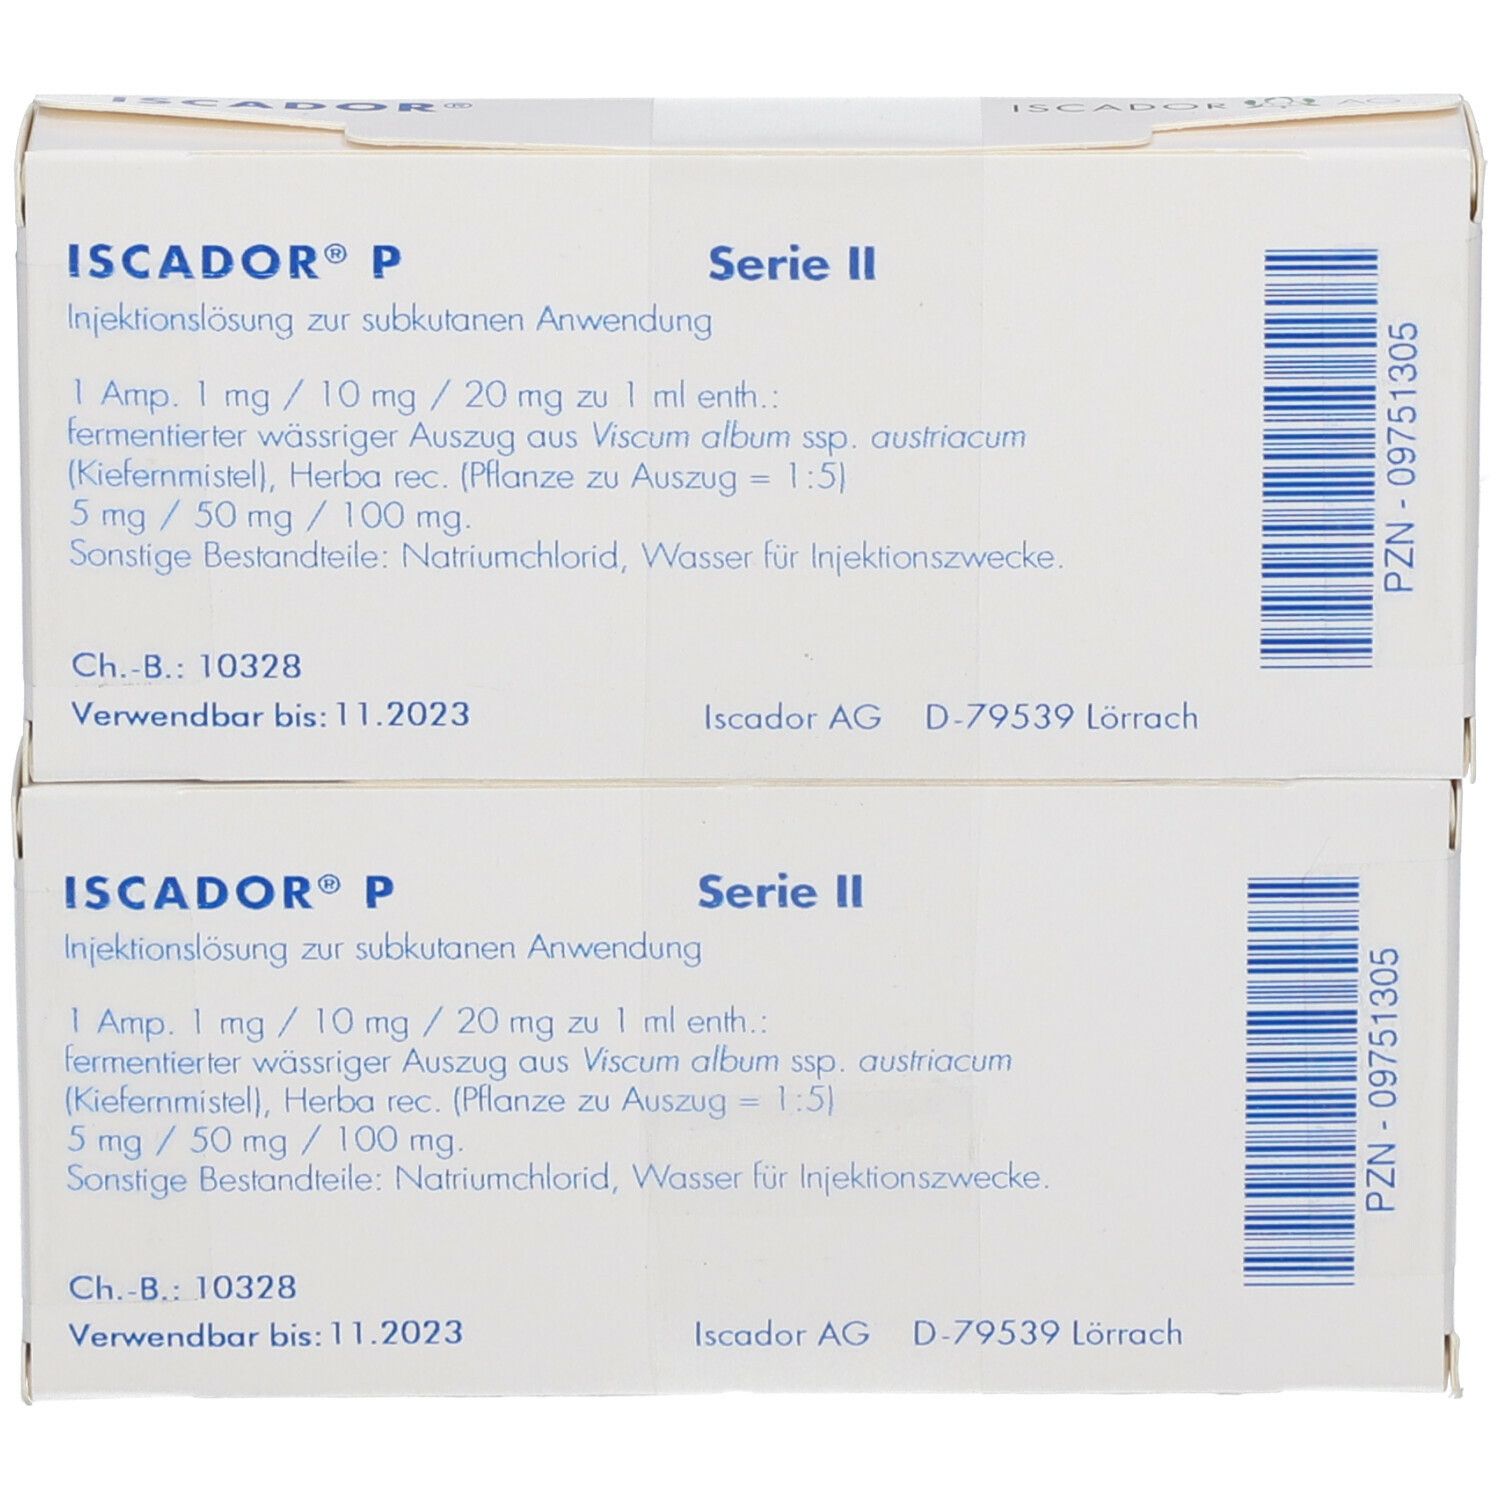 ISCADOR® P Serie II